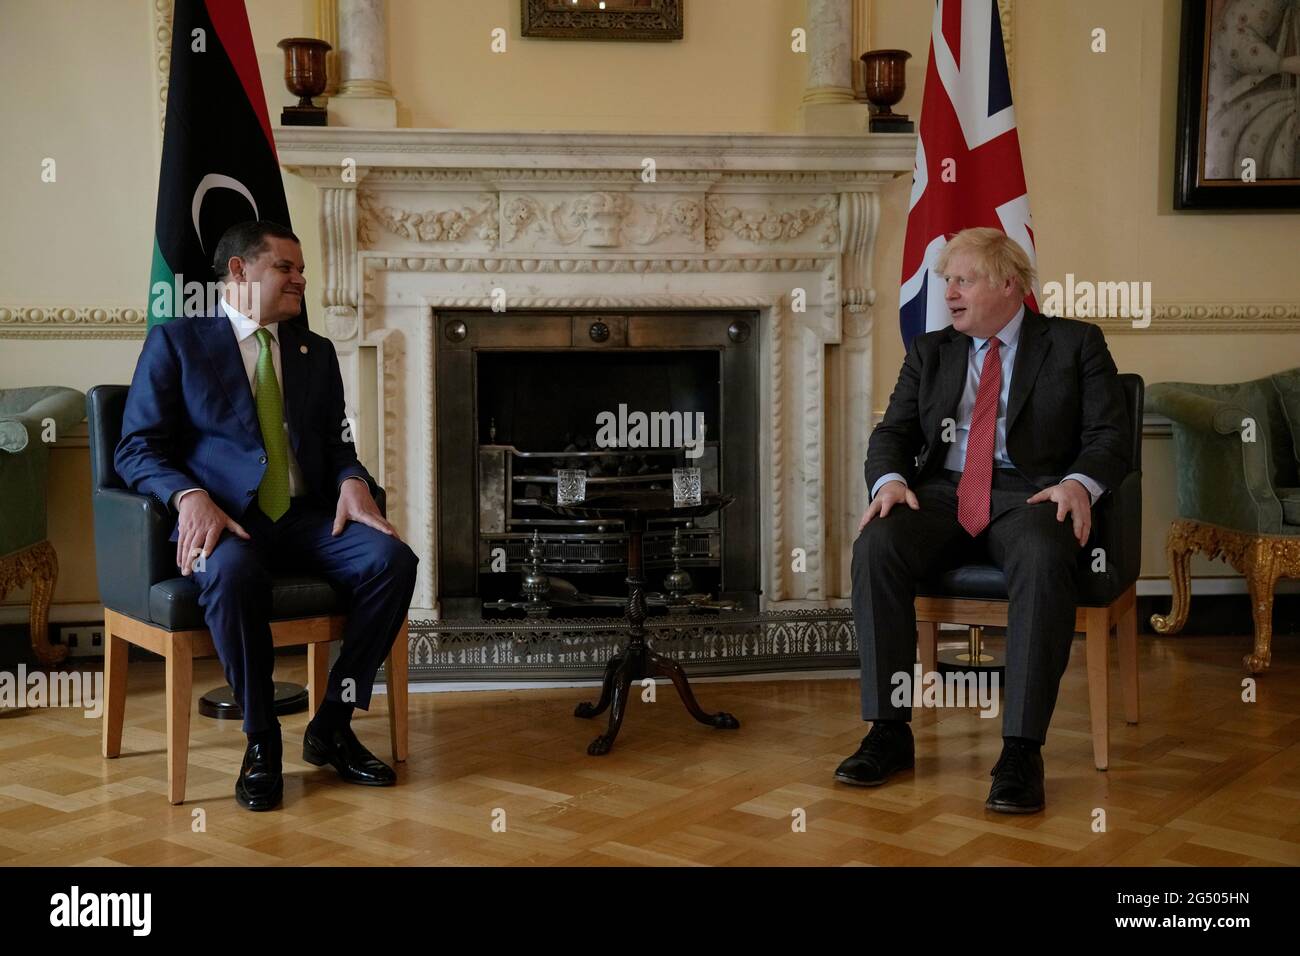 Primo Ministro Boris Johnson con il primo Ministro della Libia, Abdul Hamid Dbeibah, all'interno del 10 Downing Street, Londra, in vista di un incontro bilaterale. Data immagine: Giovedì 24 giugno 2021. Foto Stock